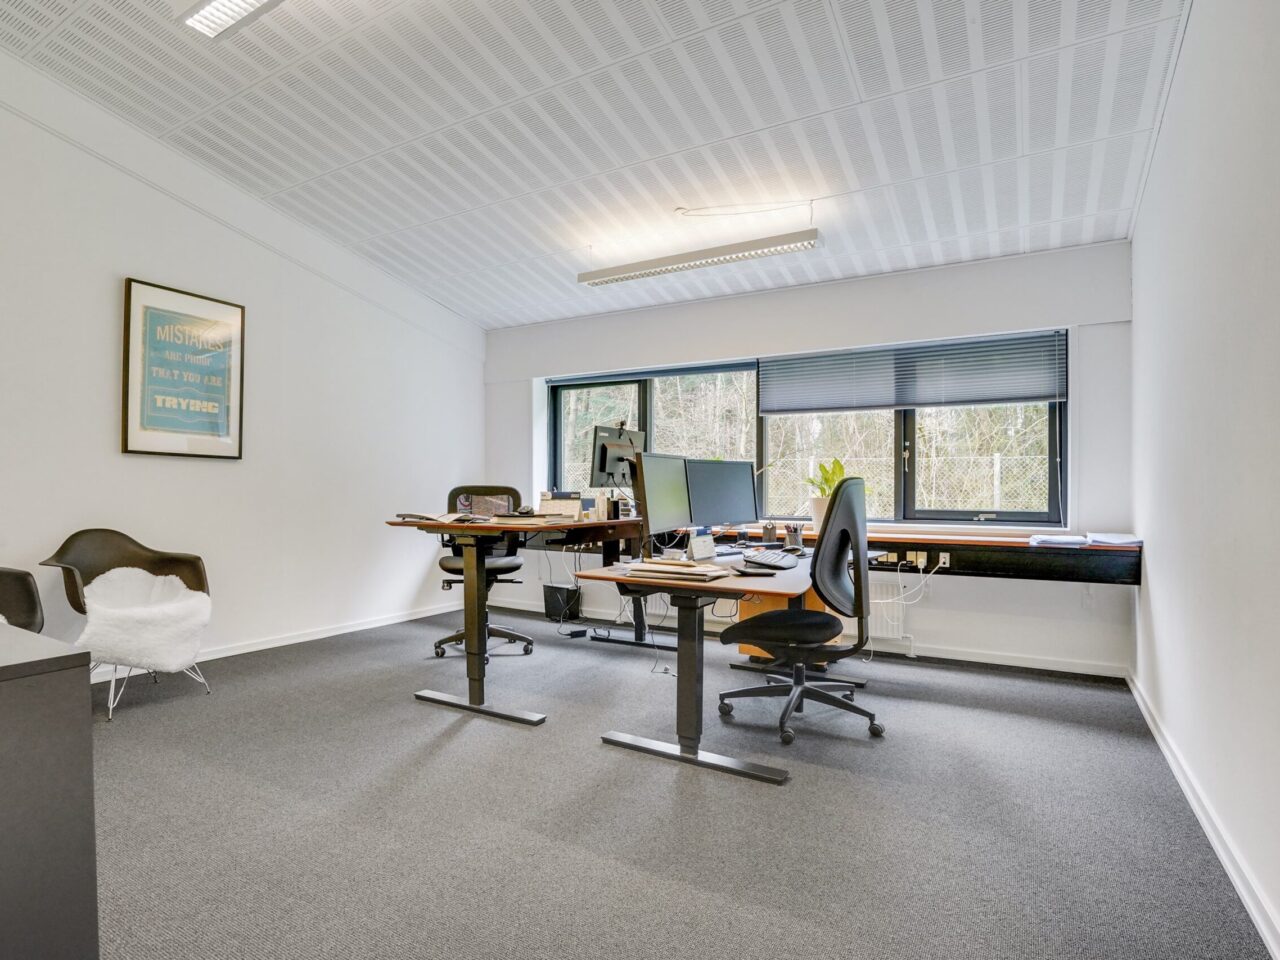 Kontorlokaler til leje i Vejen - lokale med hvide vægge og grå gulv, med stor vinduer og to skrivebord